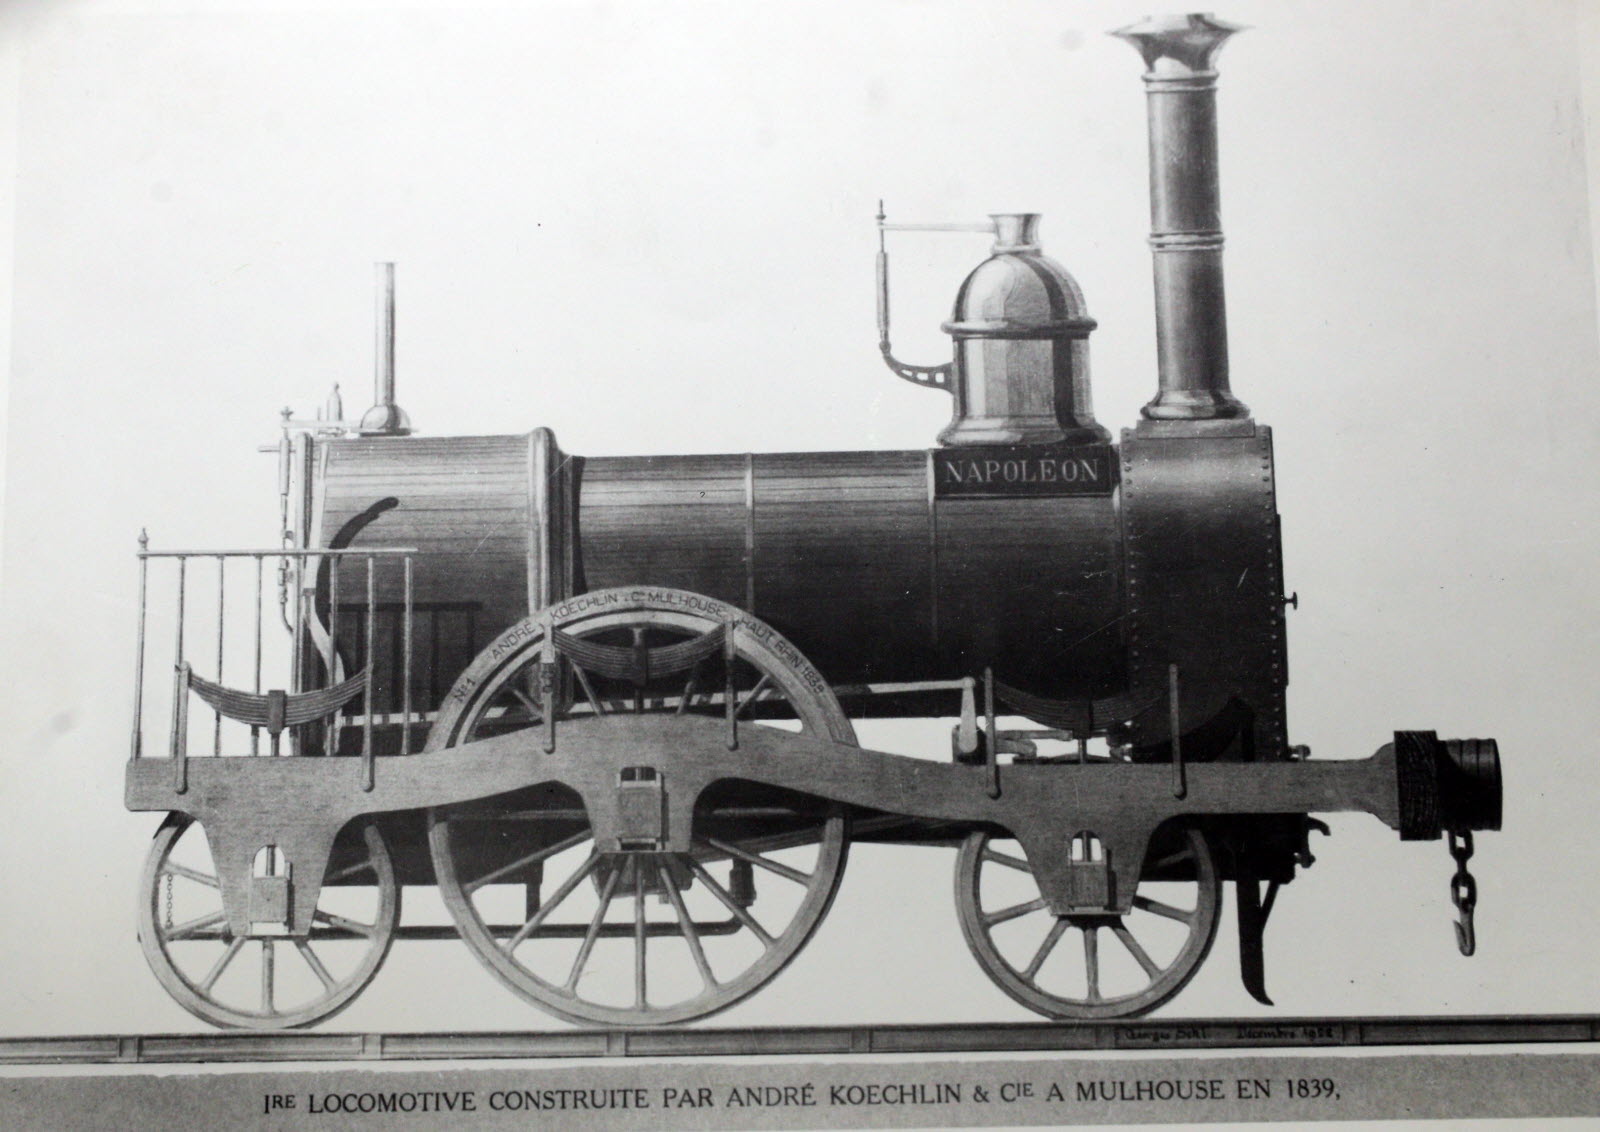 la-locomotive-napol-on-1839-soci-t-industrielle-de-mulhouse